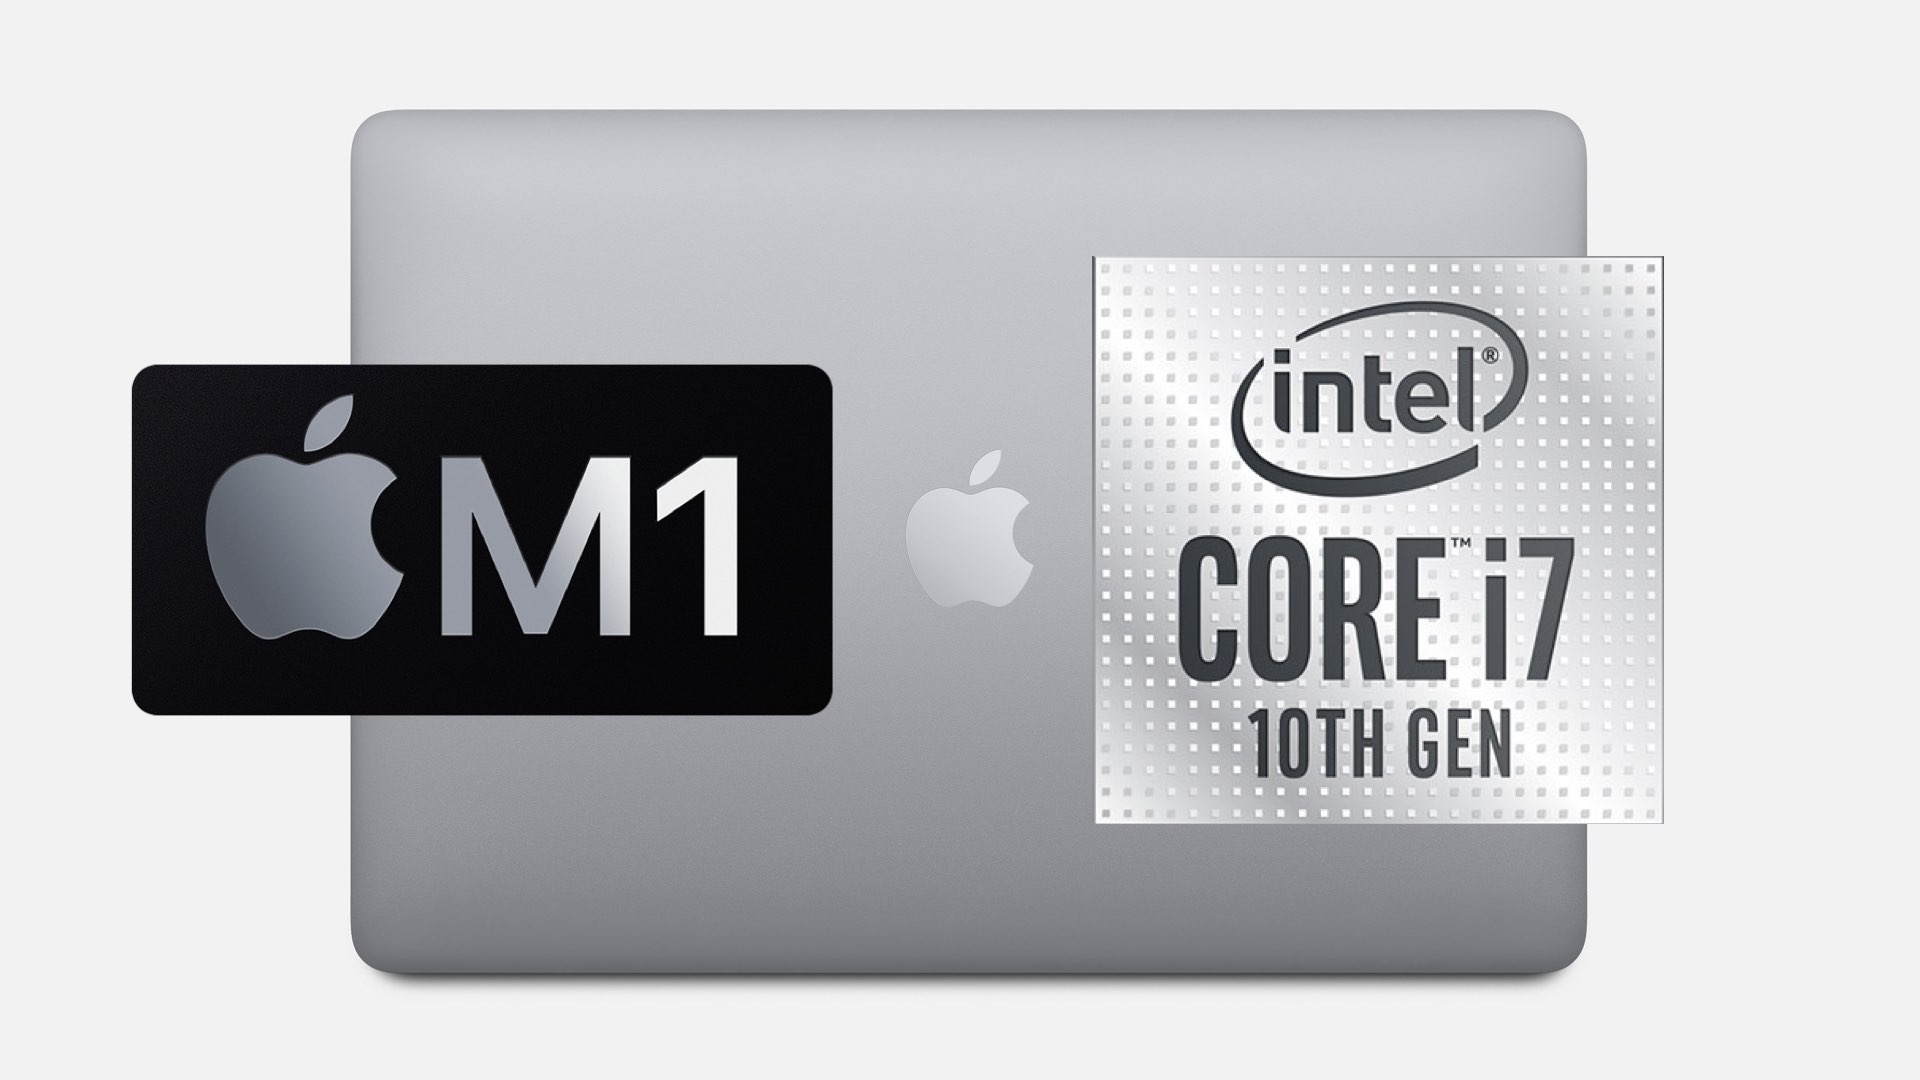 MacBook Pro Price Comparison: Apple M1 Vs. Intel Core i7